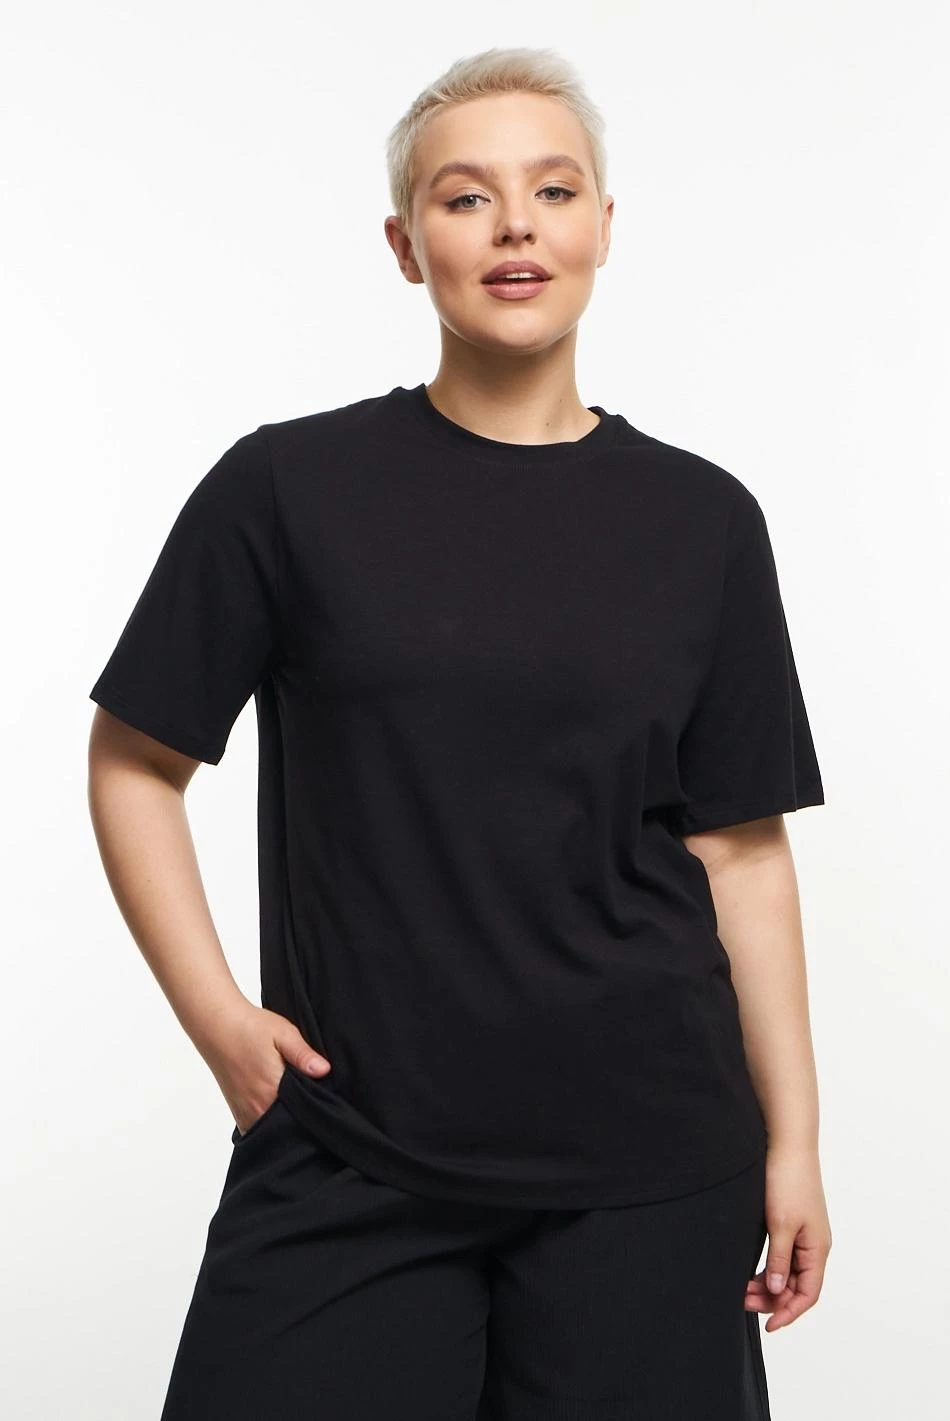 Черная базовая футболка с круглым вырезом на фигуру плюс сайз купить онлайн